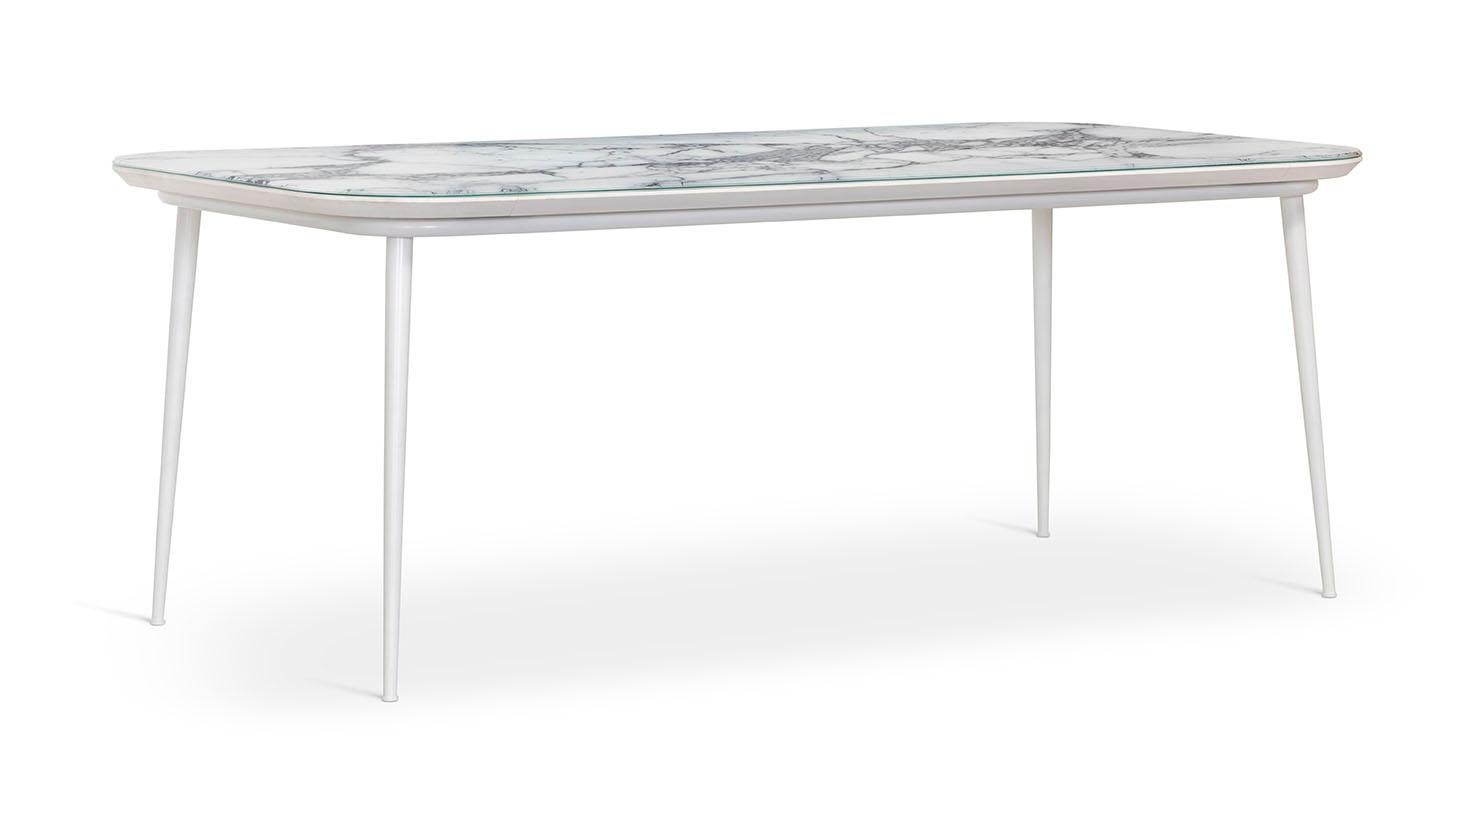 Ein Abendessen mit Blick aufs Meer ist der perfekte Rahmen, um den Filicudi-Tisch im Freien zu genießen. Platte aus Vetrite, Unterplatte aus Hpl, Beine aus weiß lackiertem Aluminium, witterungsbeständig. Filicudi bietet Platz für etwa 8